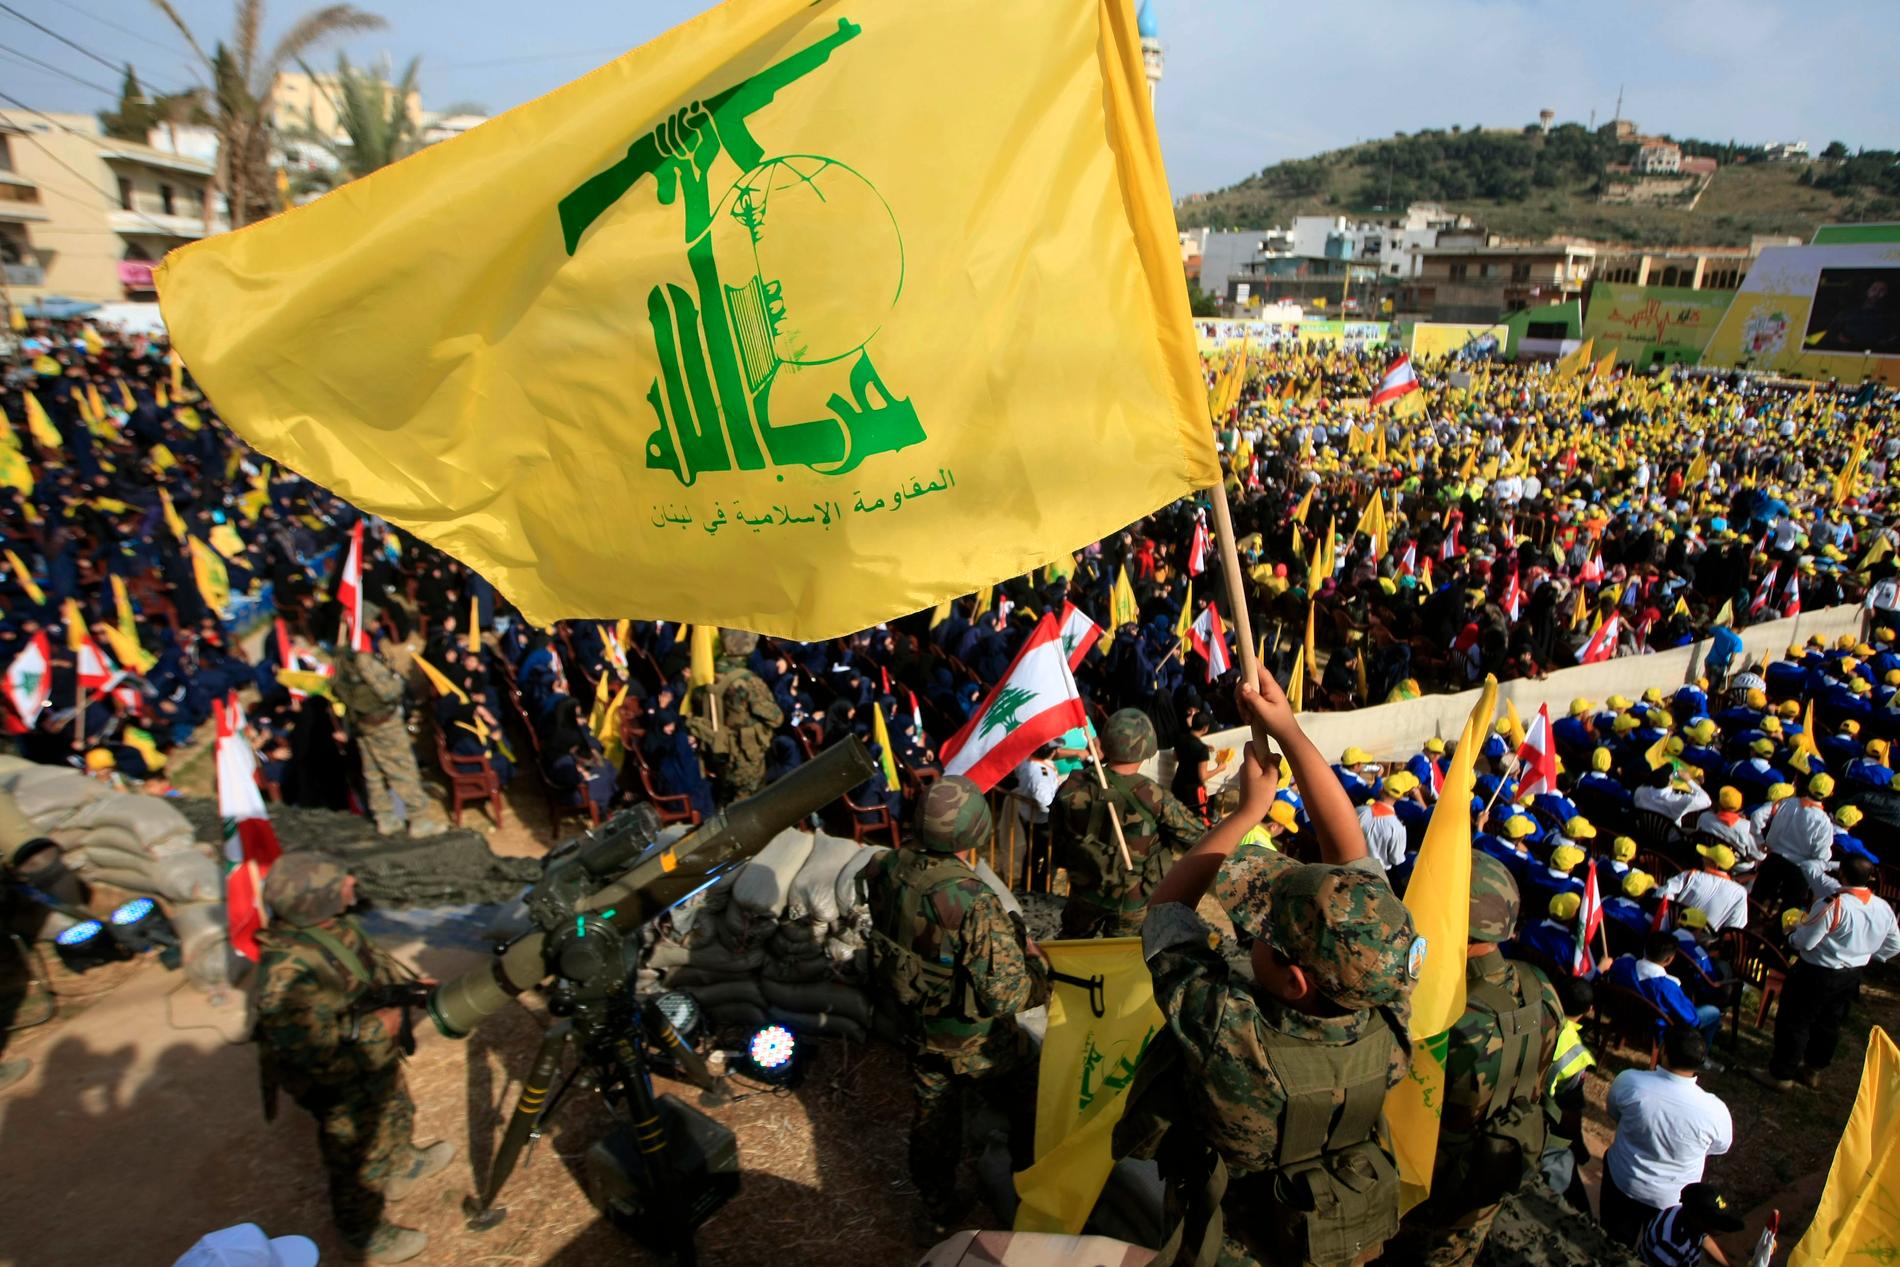 Svensken misstänks för att ha jobbat för Hizbollah genom spioneri.